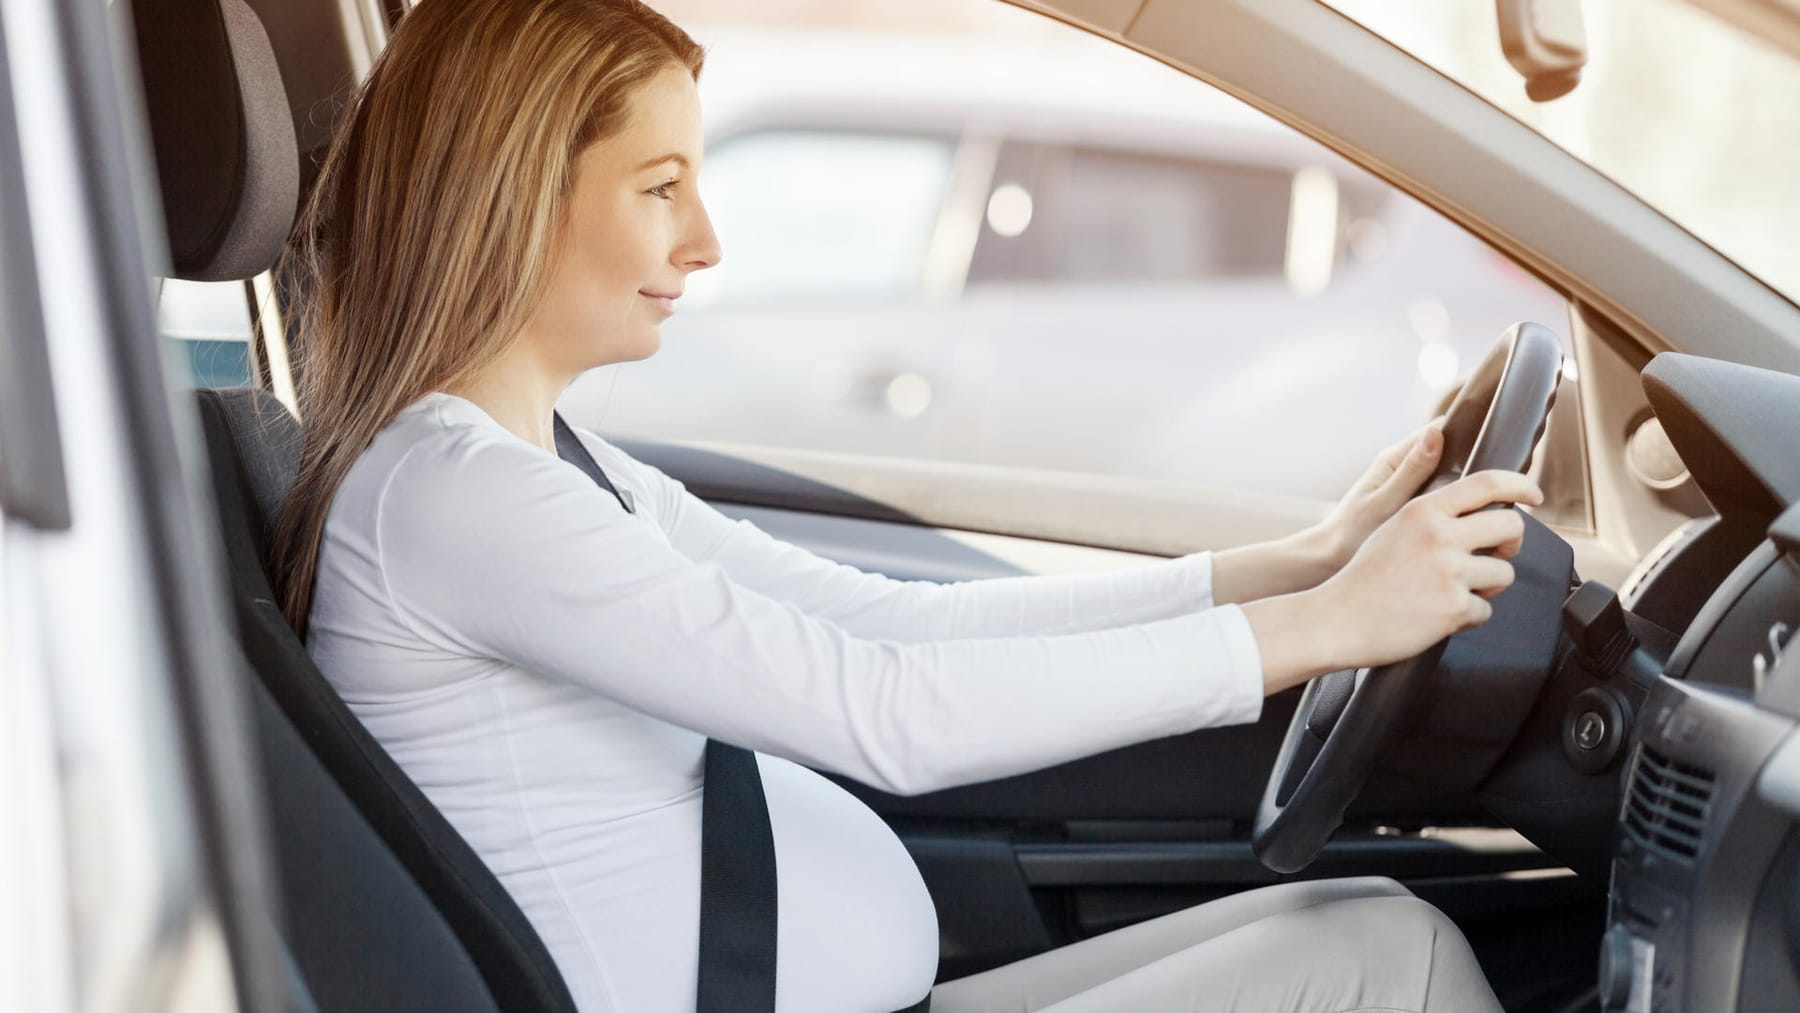 Eine schwangere Frau, die einen Sicherheitsgurt trägt, fährt ein Auto.  Sicherheit und Fahrverhalten während der Schwangerschaft, auf Reisen  Stockfotografie - Alamy